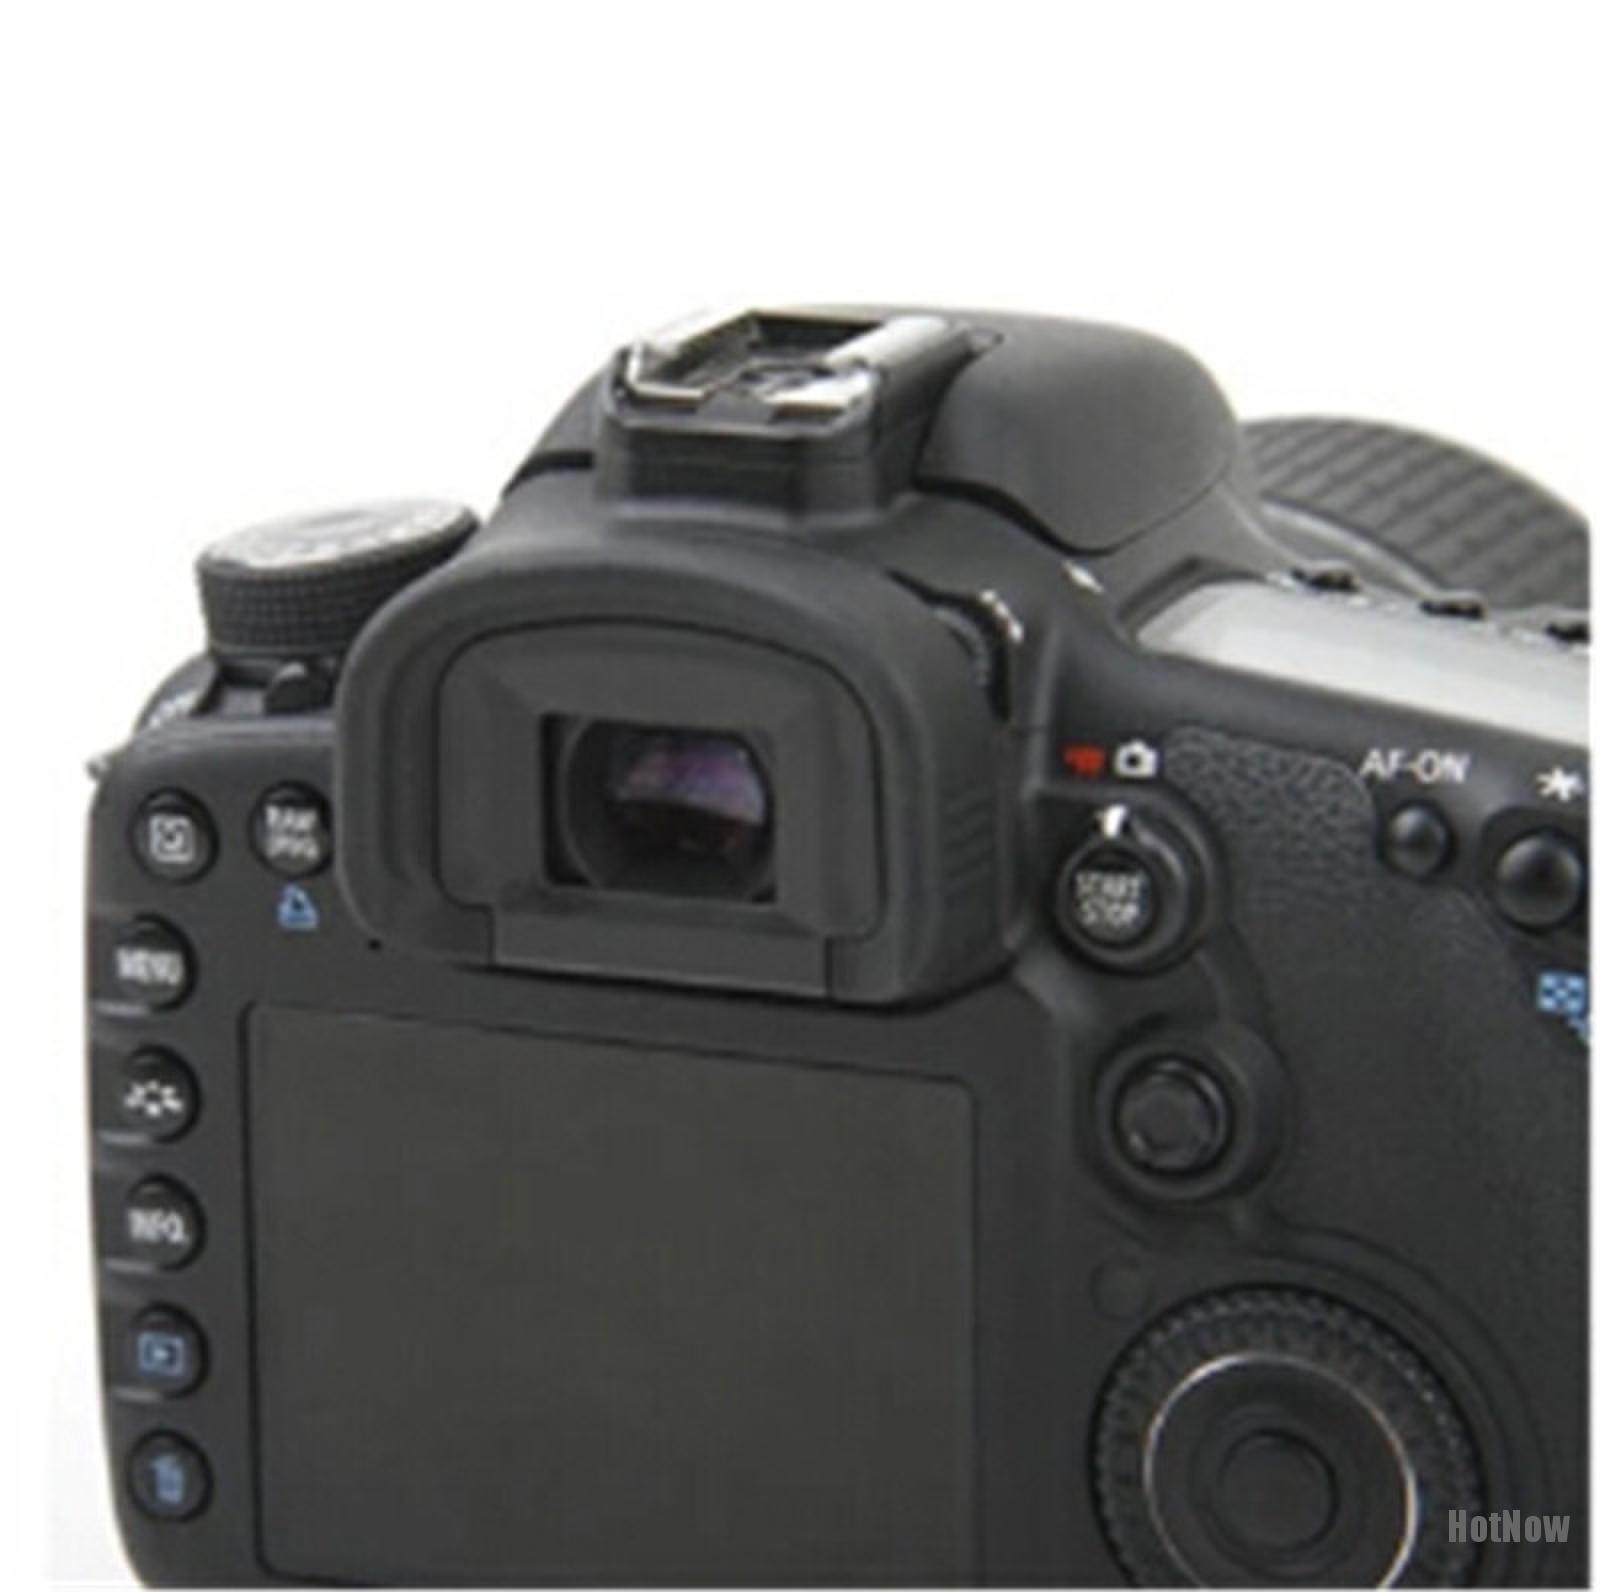 Eyecup Cao Su Dk-20 Cho Máy Ảnh Nikon D5100 D3100 D3000 D50 D60 D70S D5200